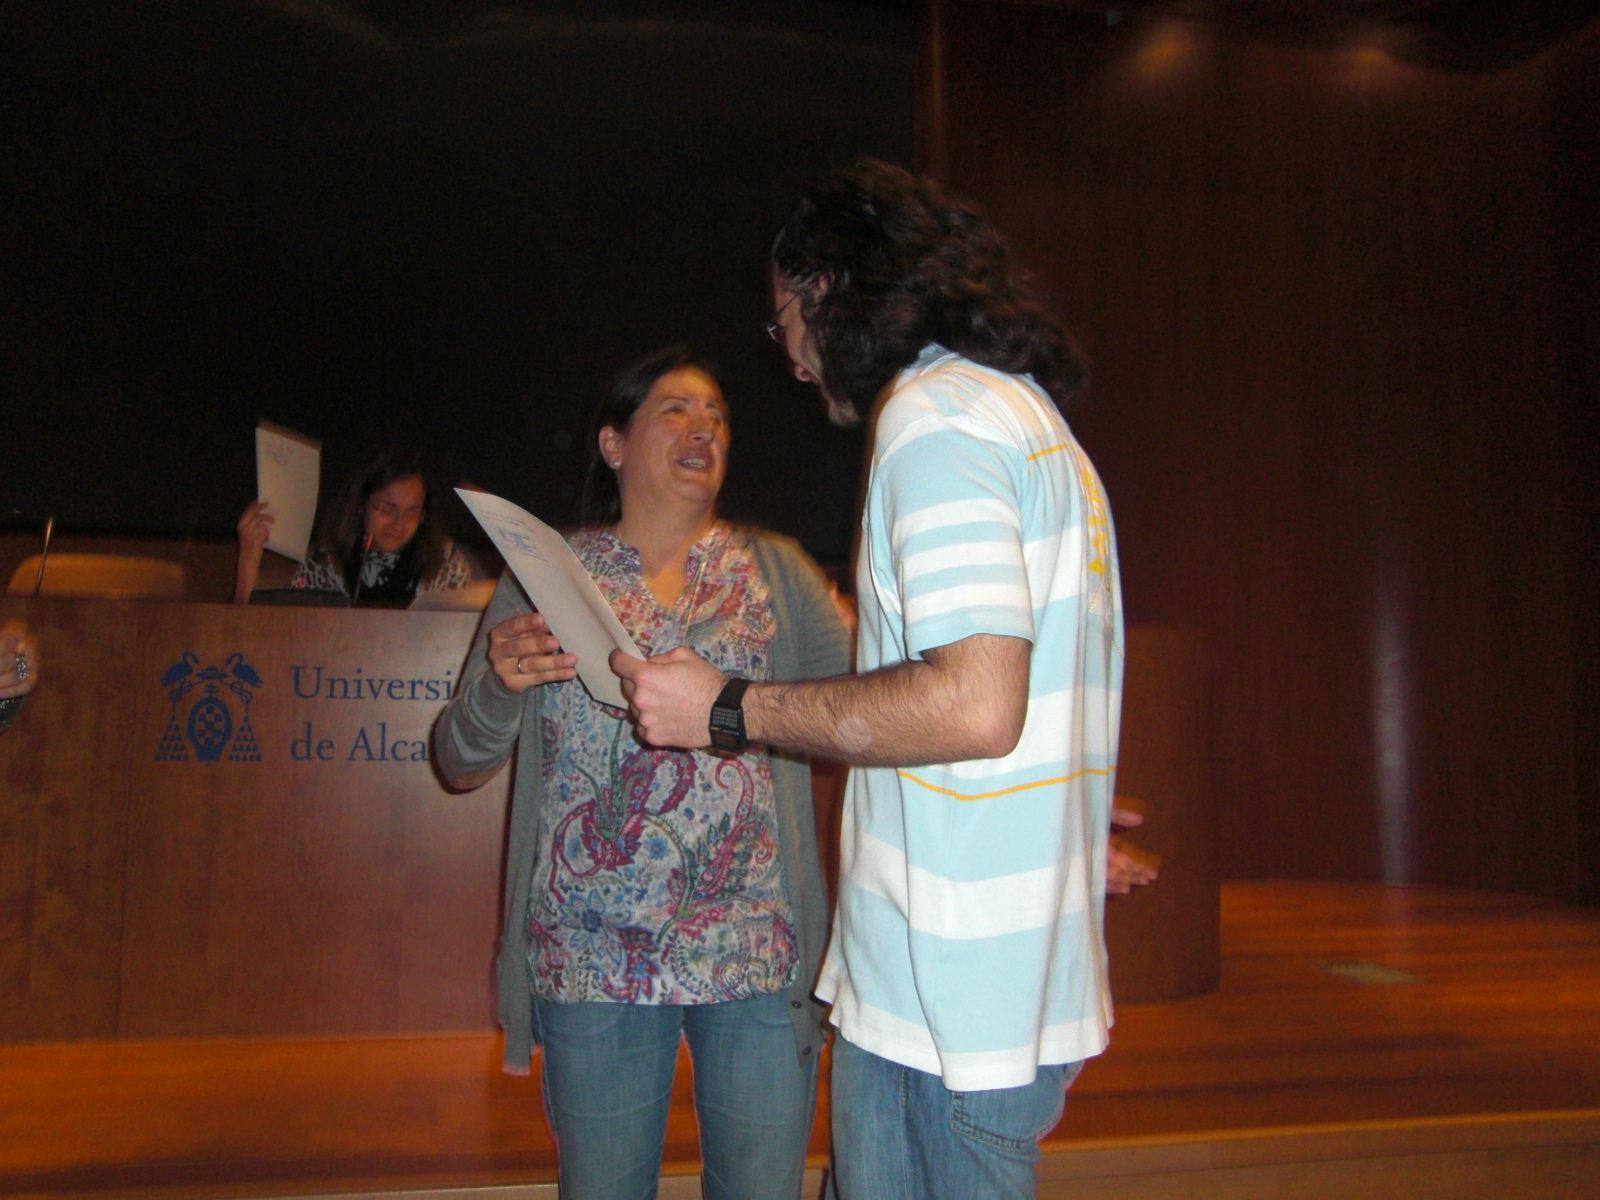 Entrega de diplomas (invierno 2009)